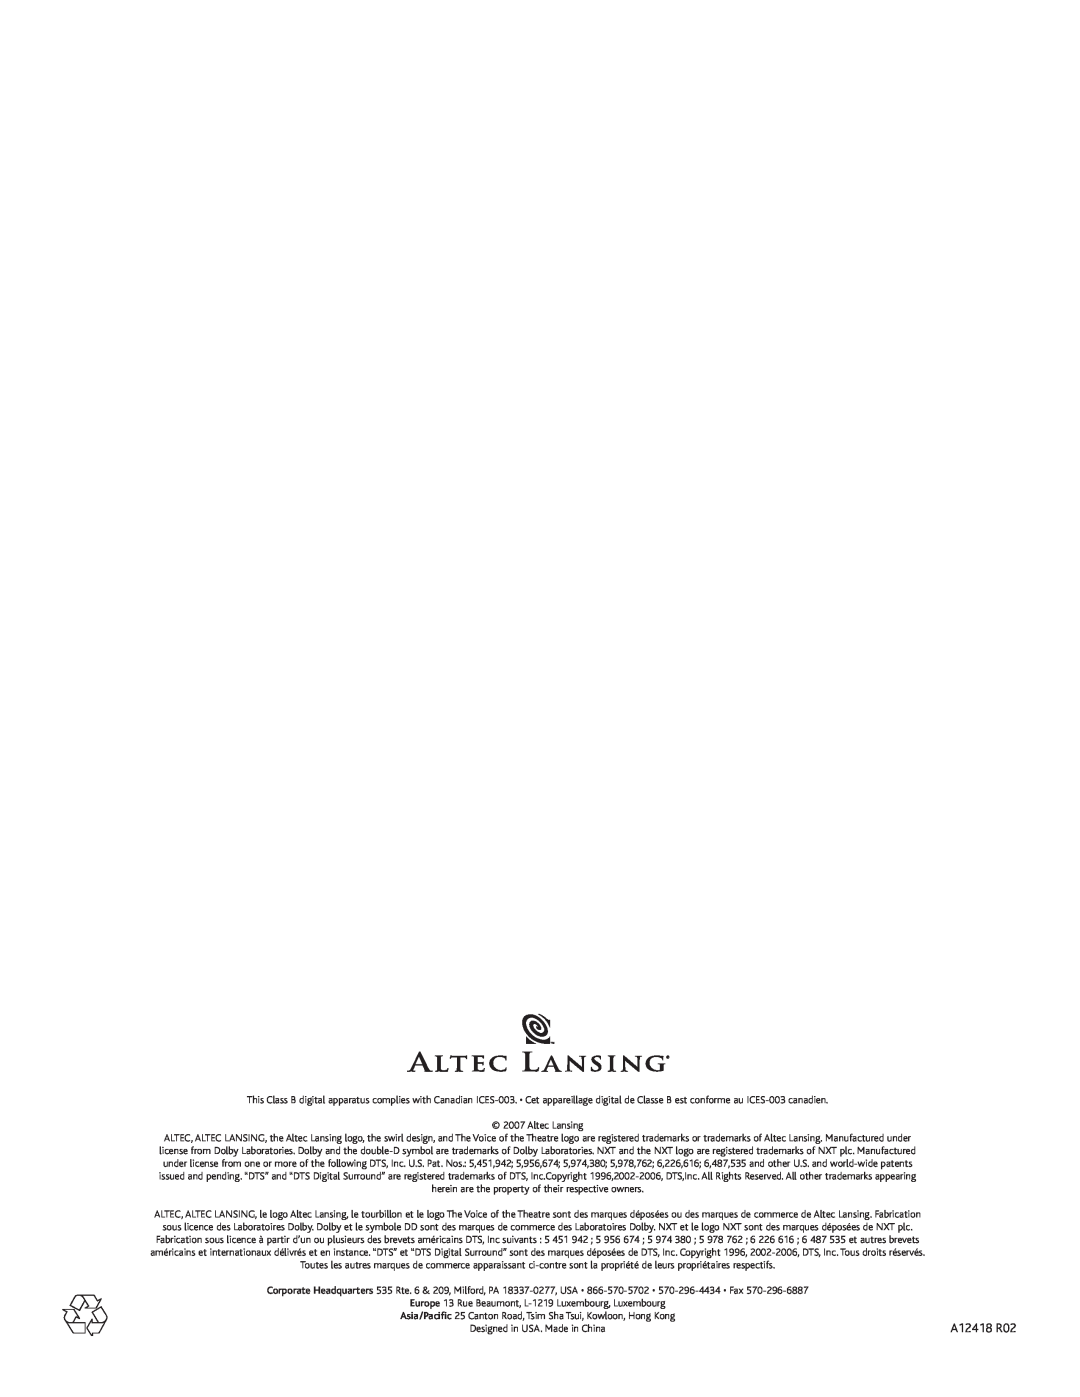 Altec Lansing PT8051 manual A12418 R02 